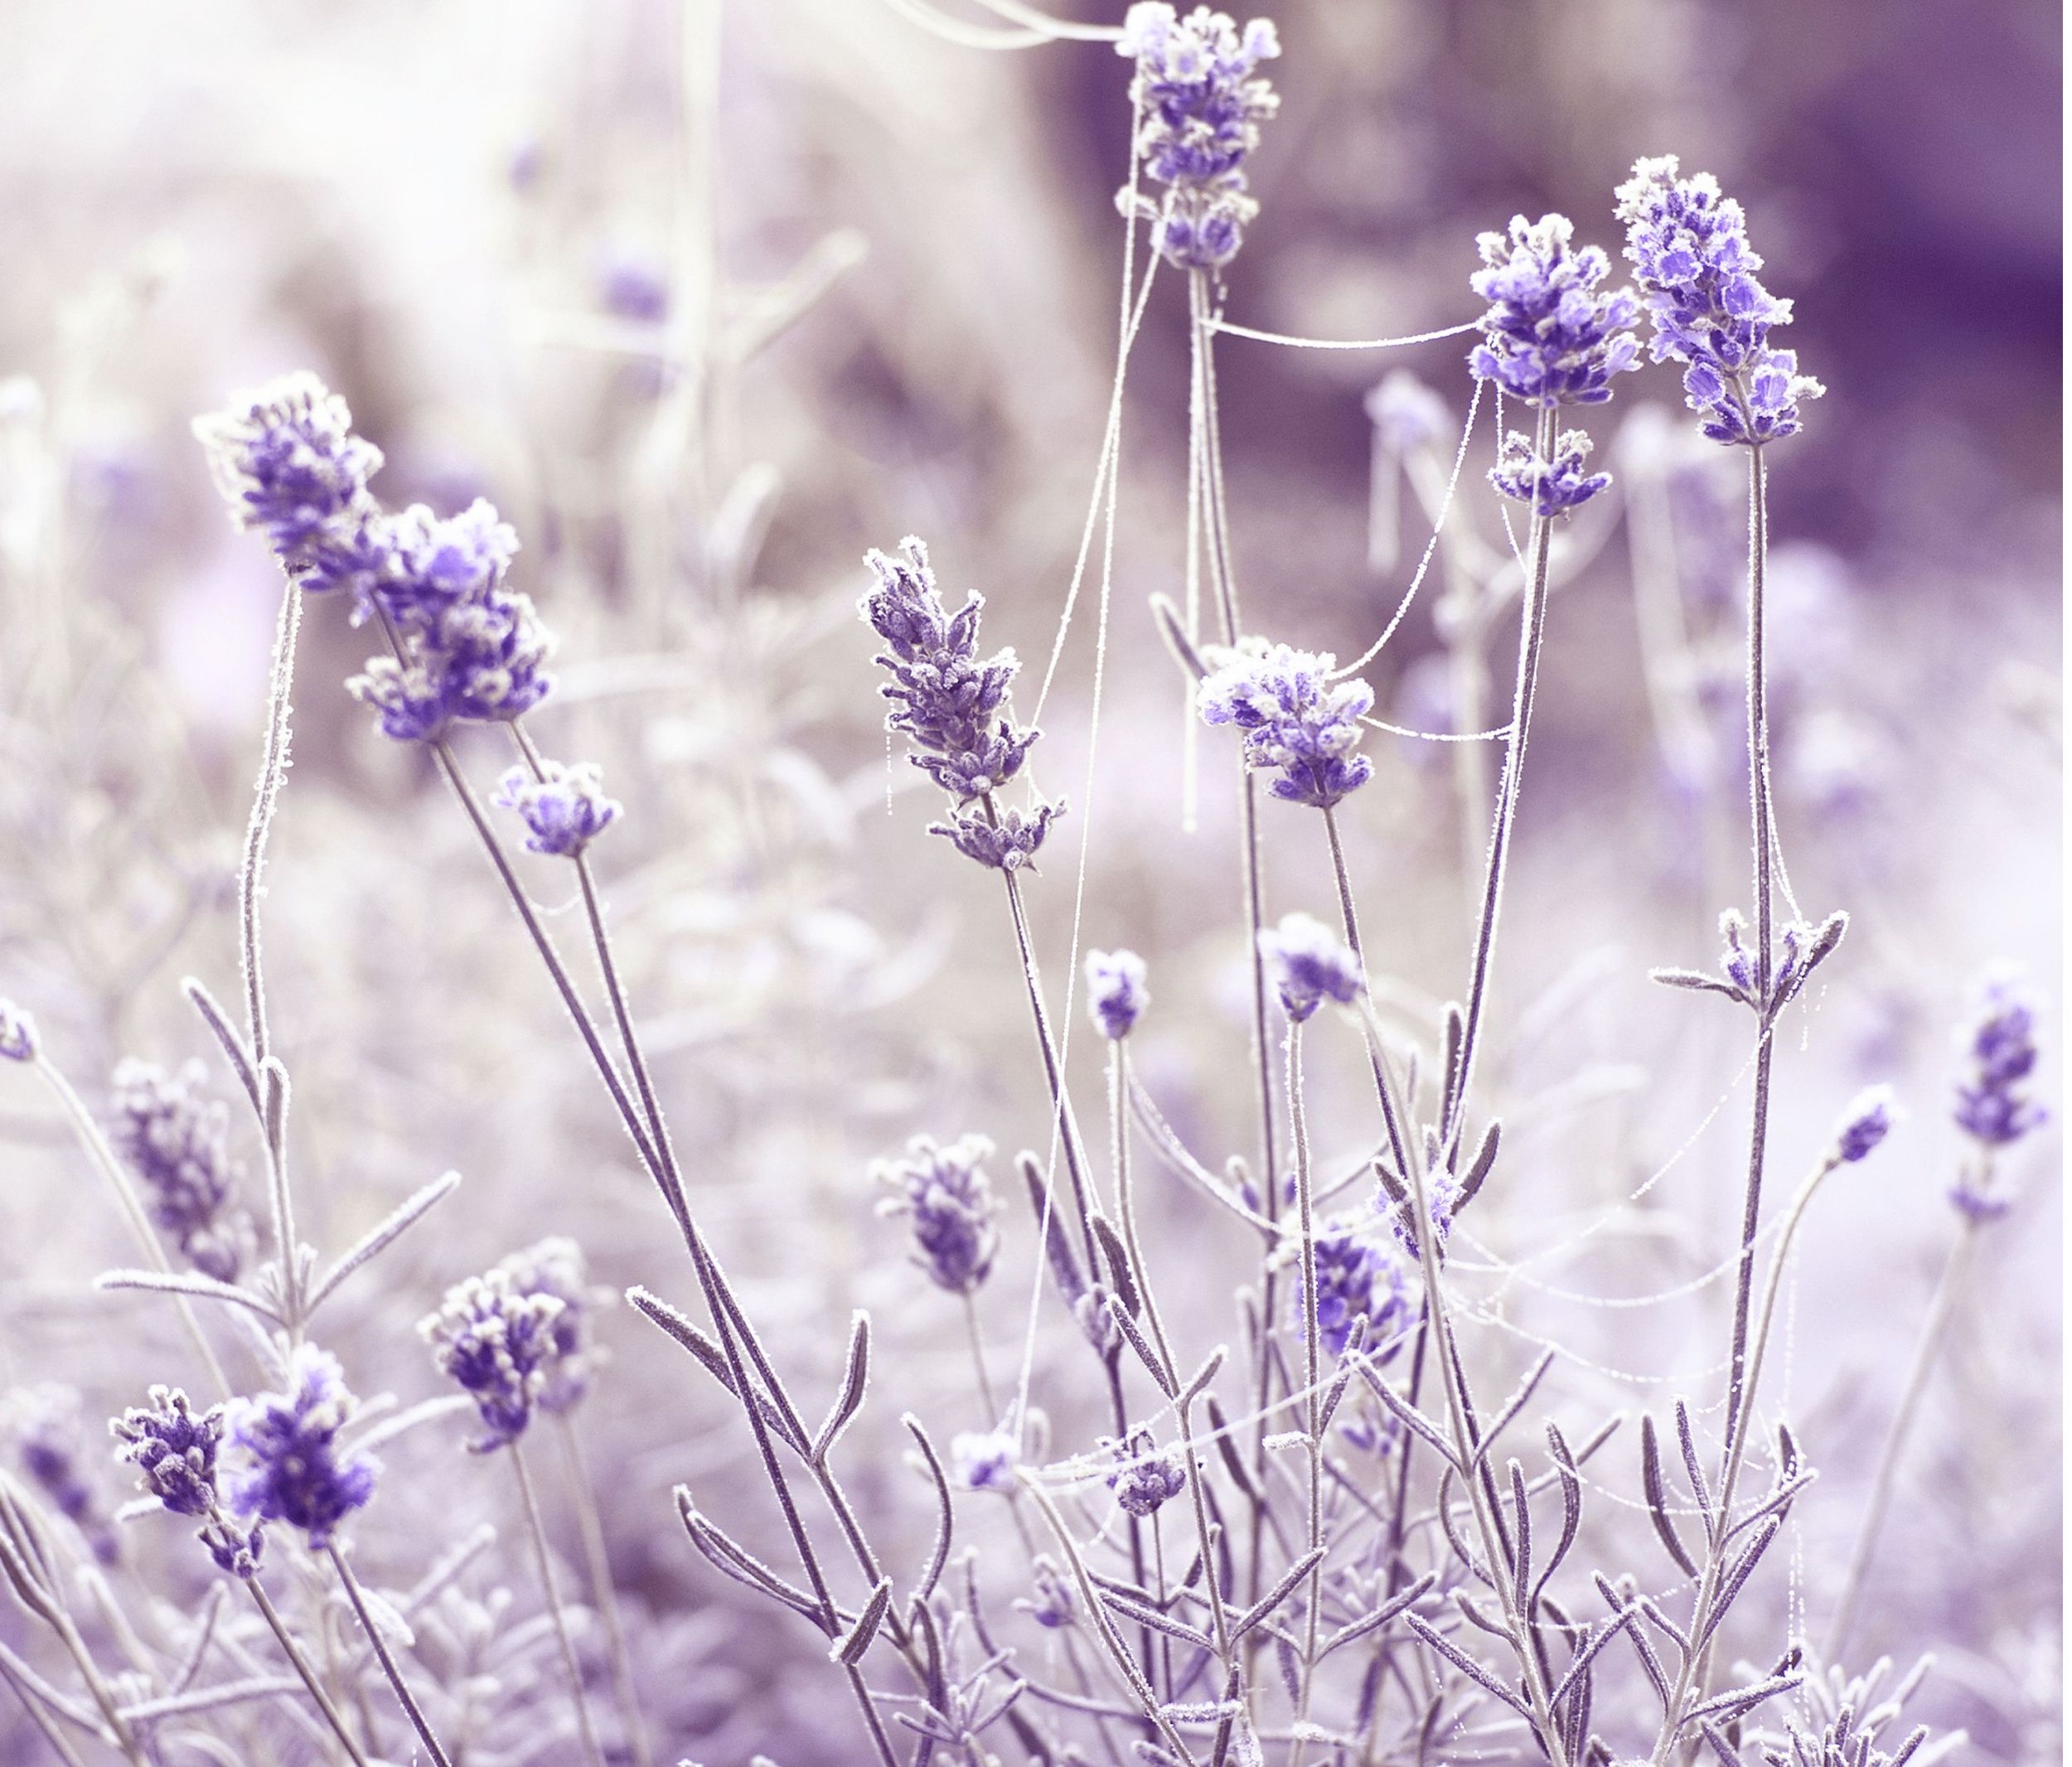 frozen lavender in winter